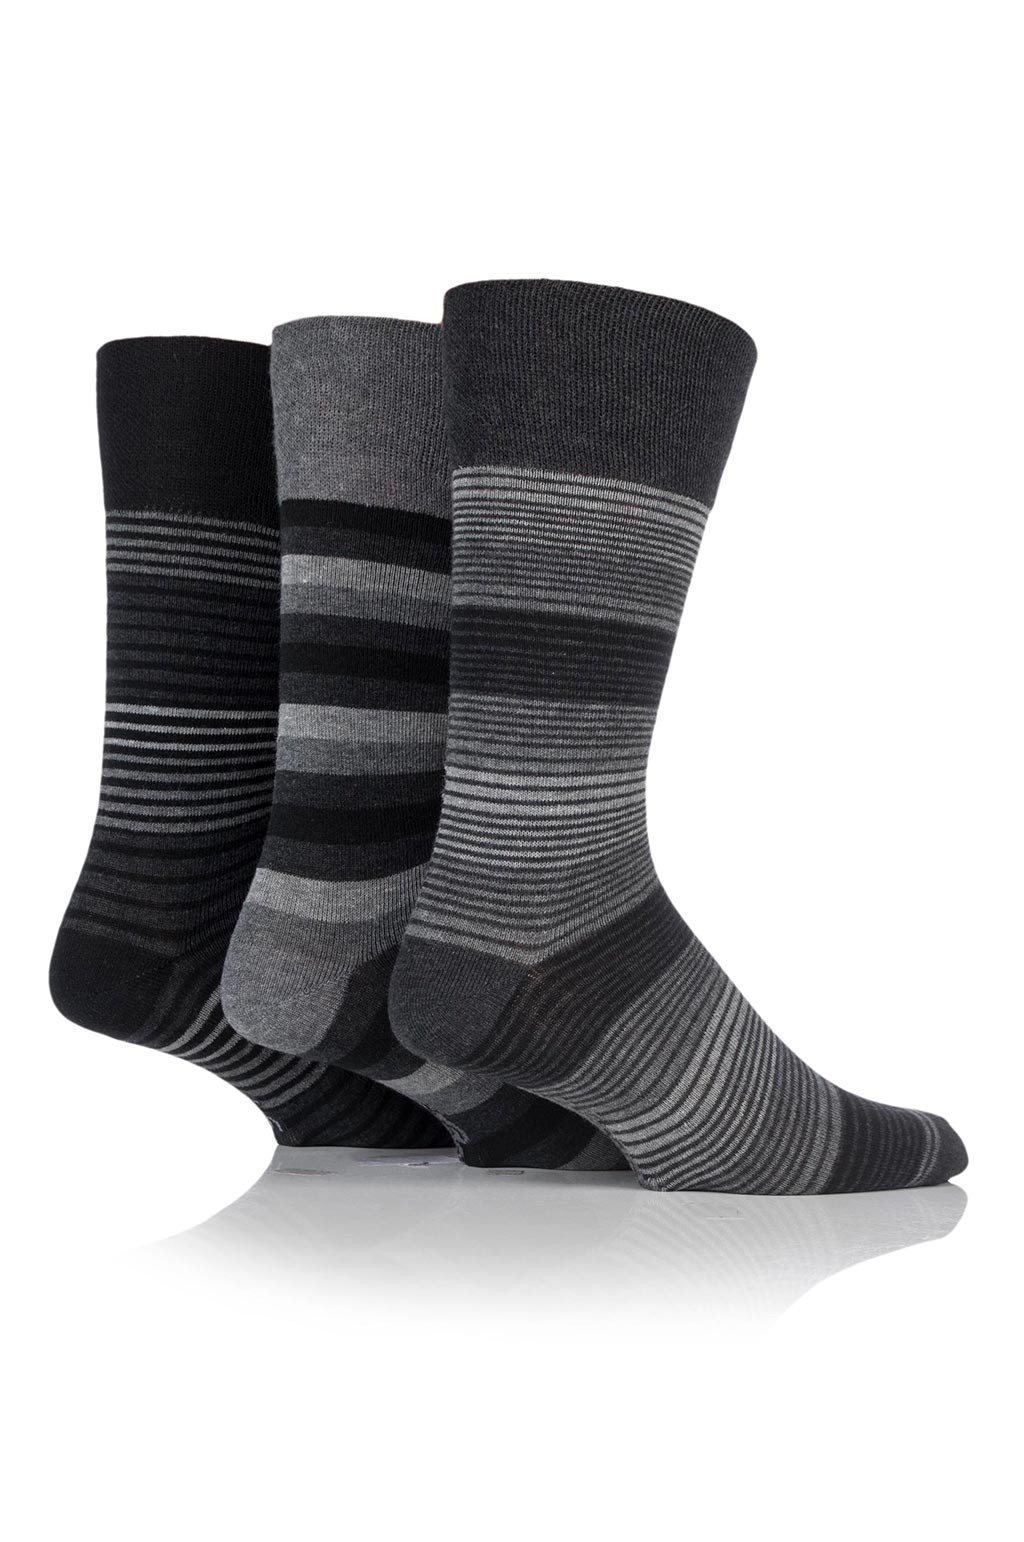 Men's Striped Socks, Grey Socks With Black Stripes, Cotton Socks